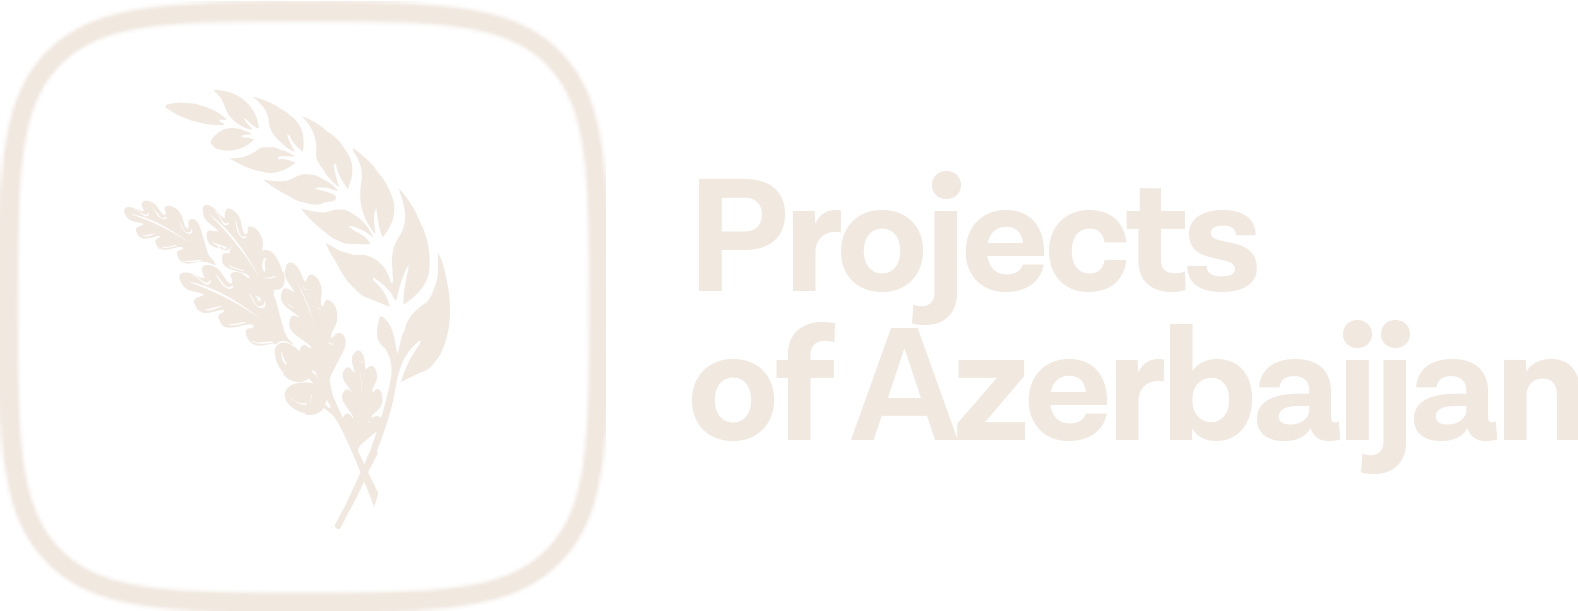 Projects of Azerbaijan - npa.az